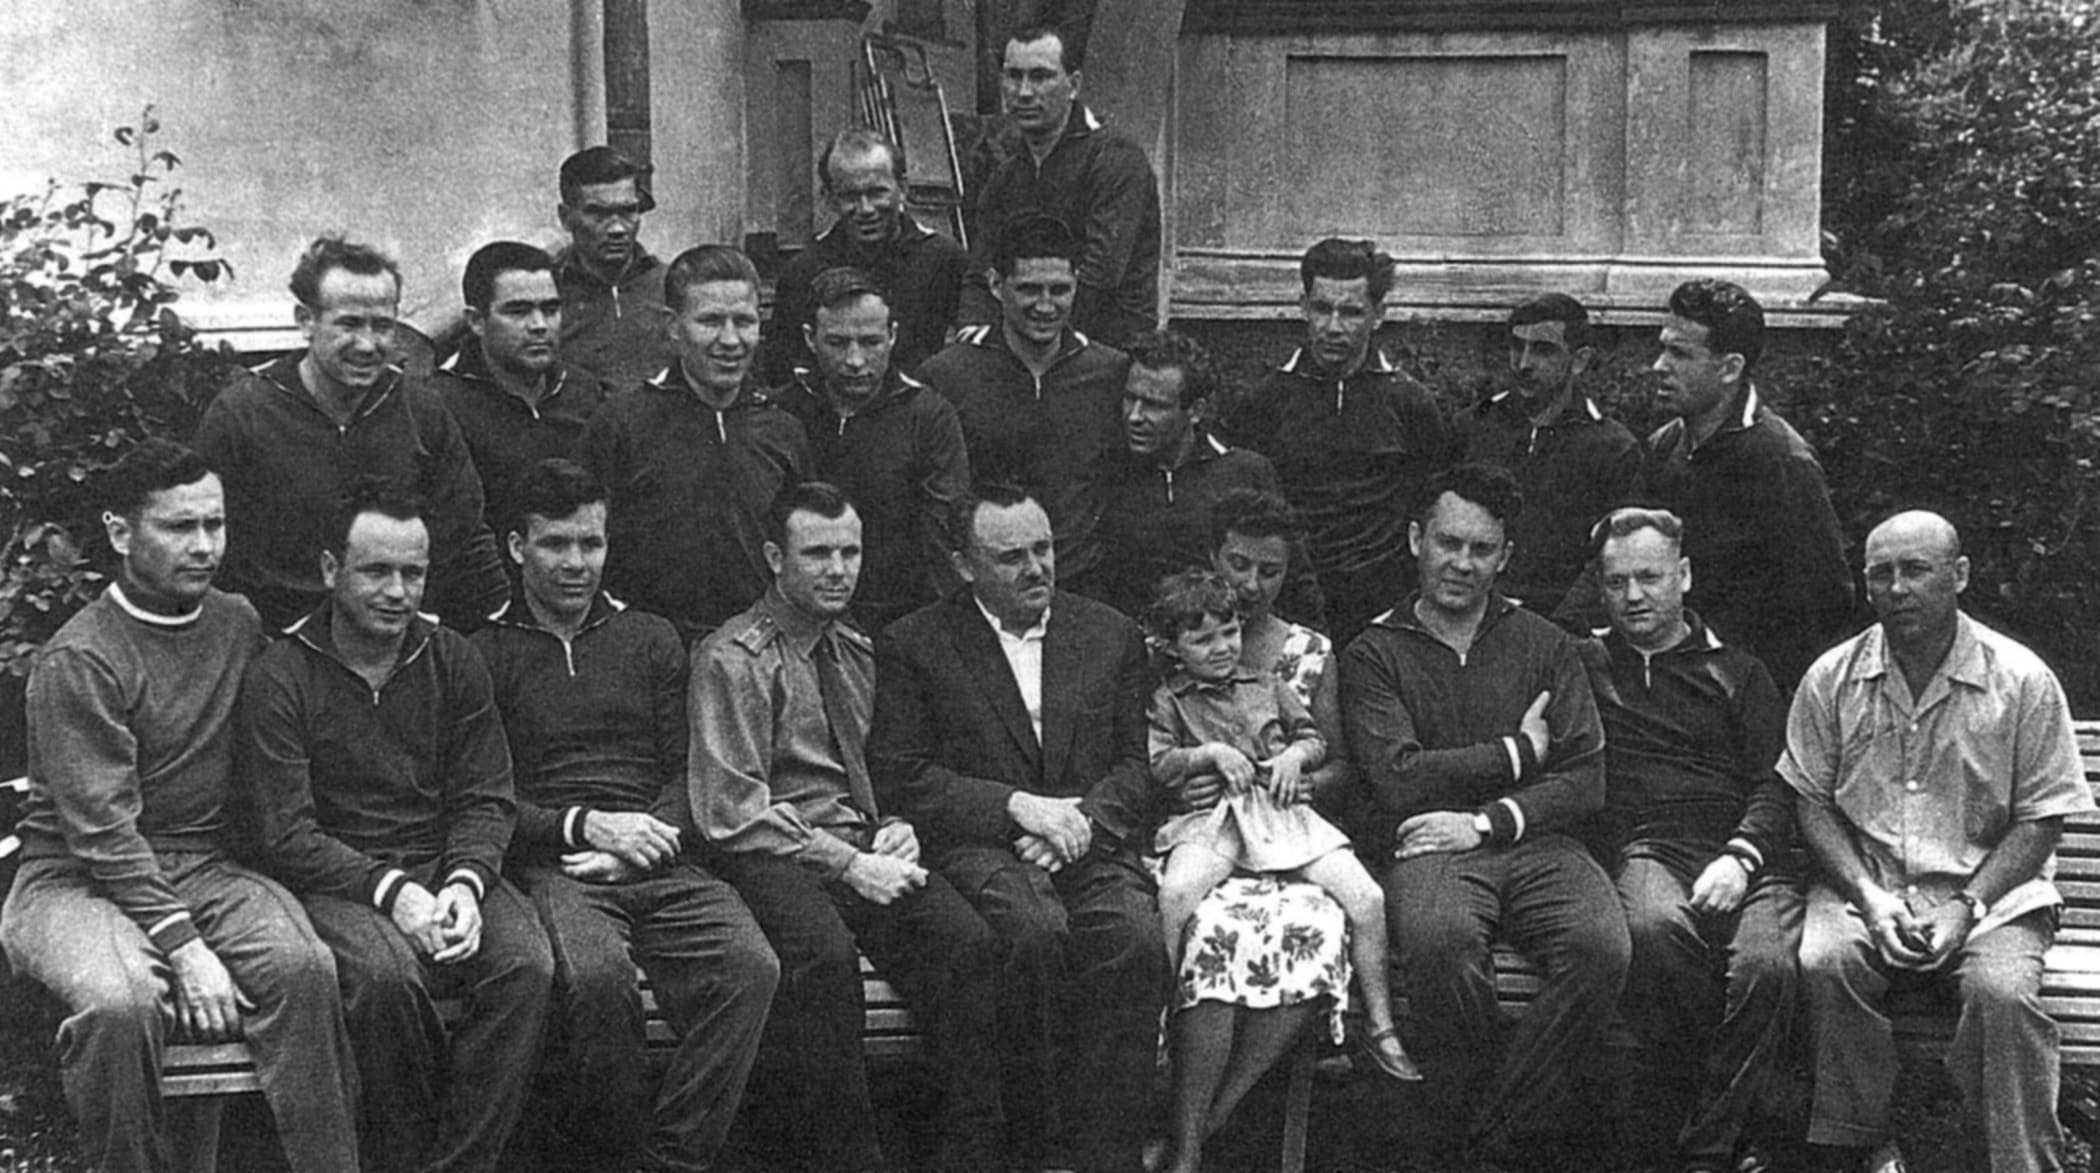 Il gruppo originale dei cosmonauti sovietici in una foto del maggio 1961. Al centro sulla sinistra Jurij Gagarin